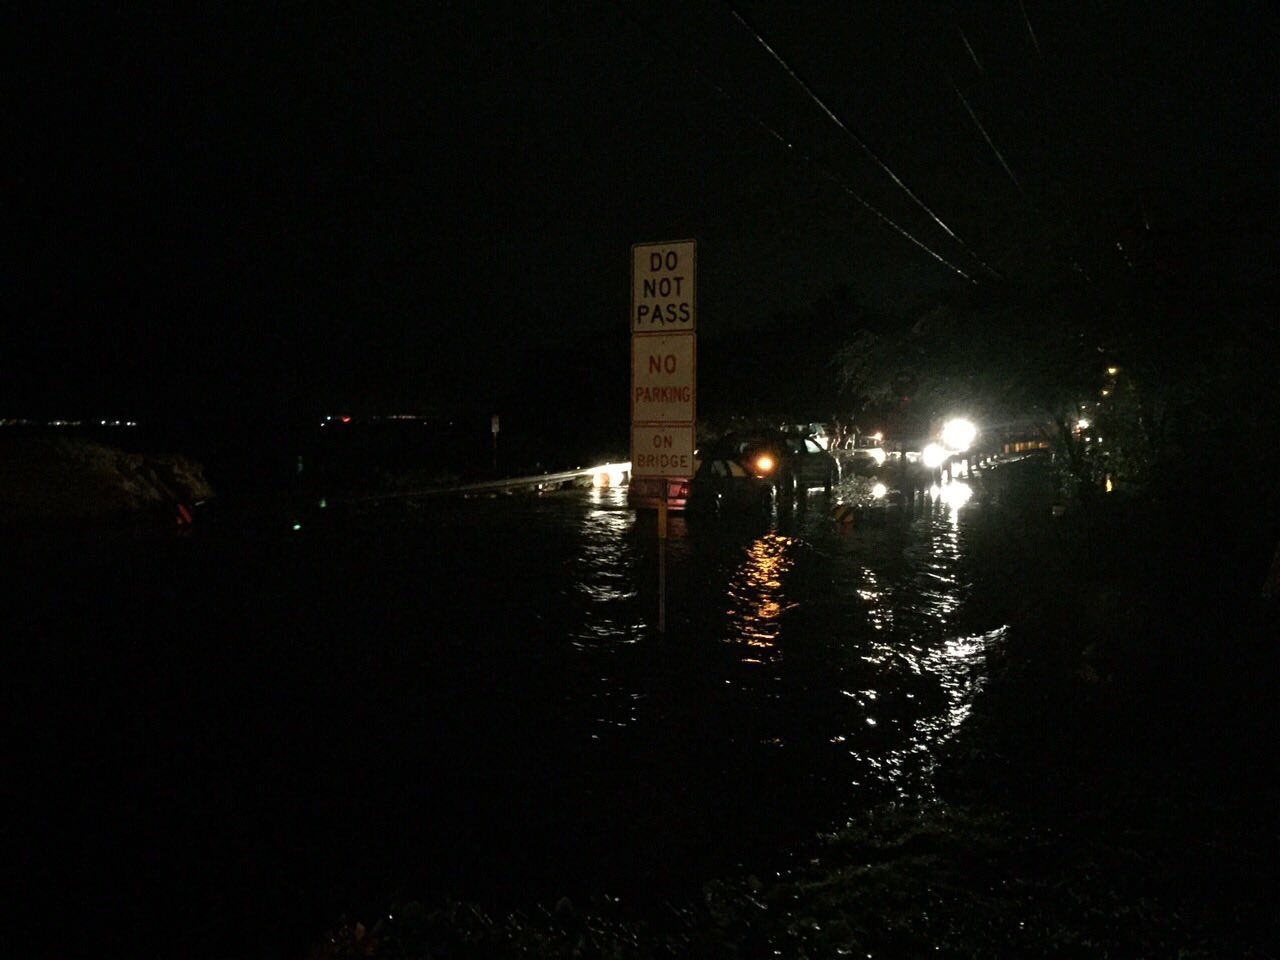 Kīhei flooding, 12.11.16. Photo courtesy: Tina S.